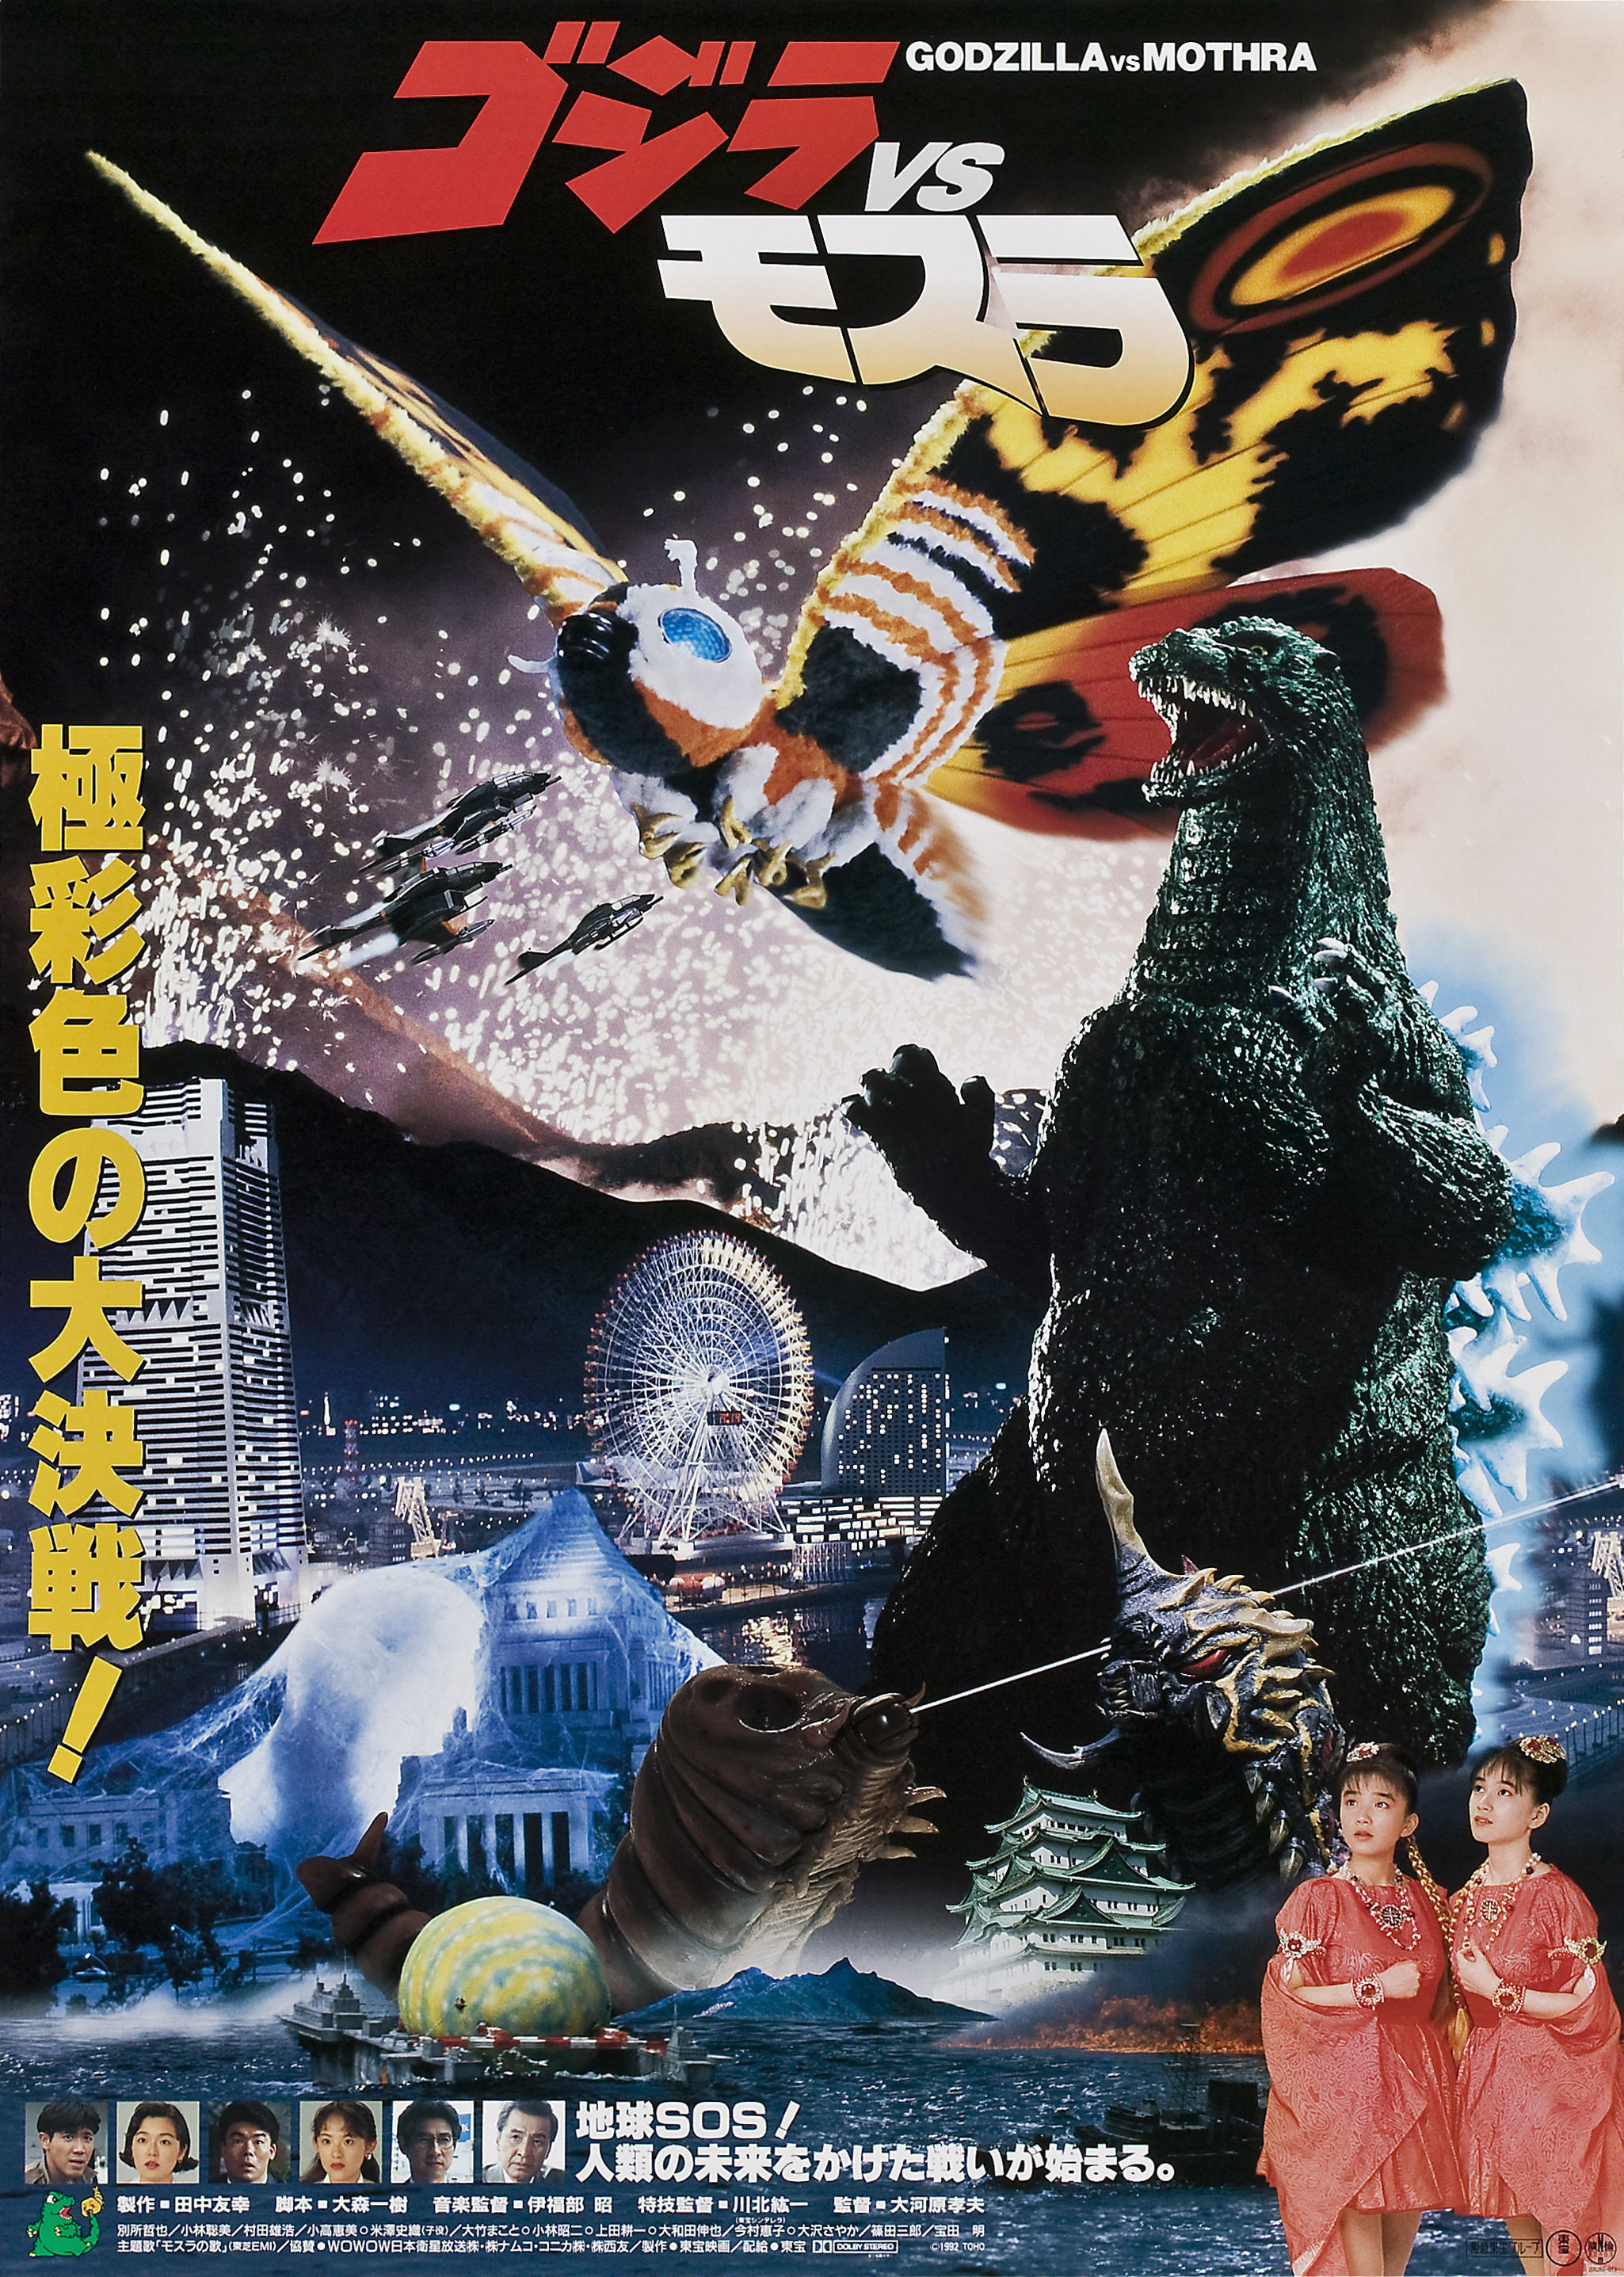 Godzilla vs. Mothra- The Battle for Earth (1992)